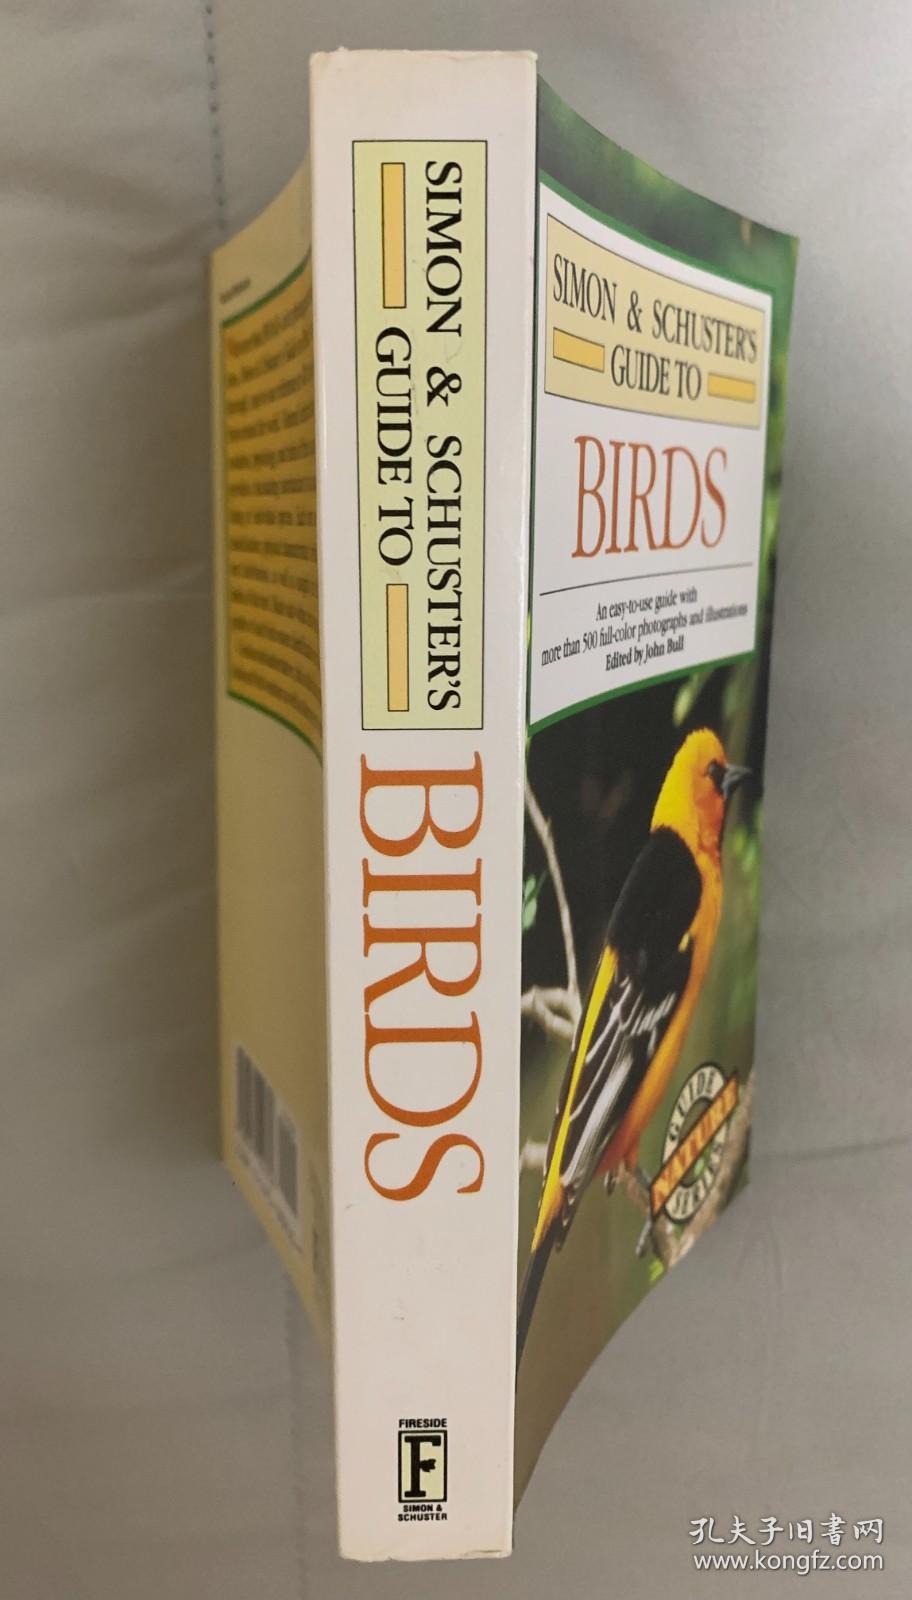 Simon & Schuster`s Guide to Birds